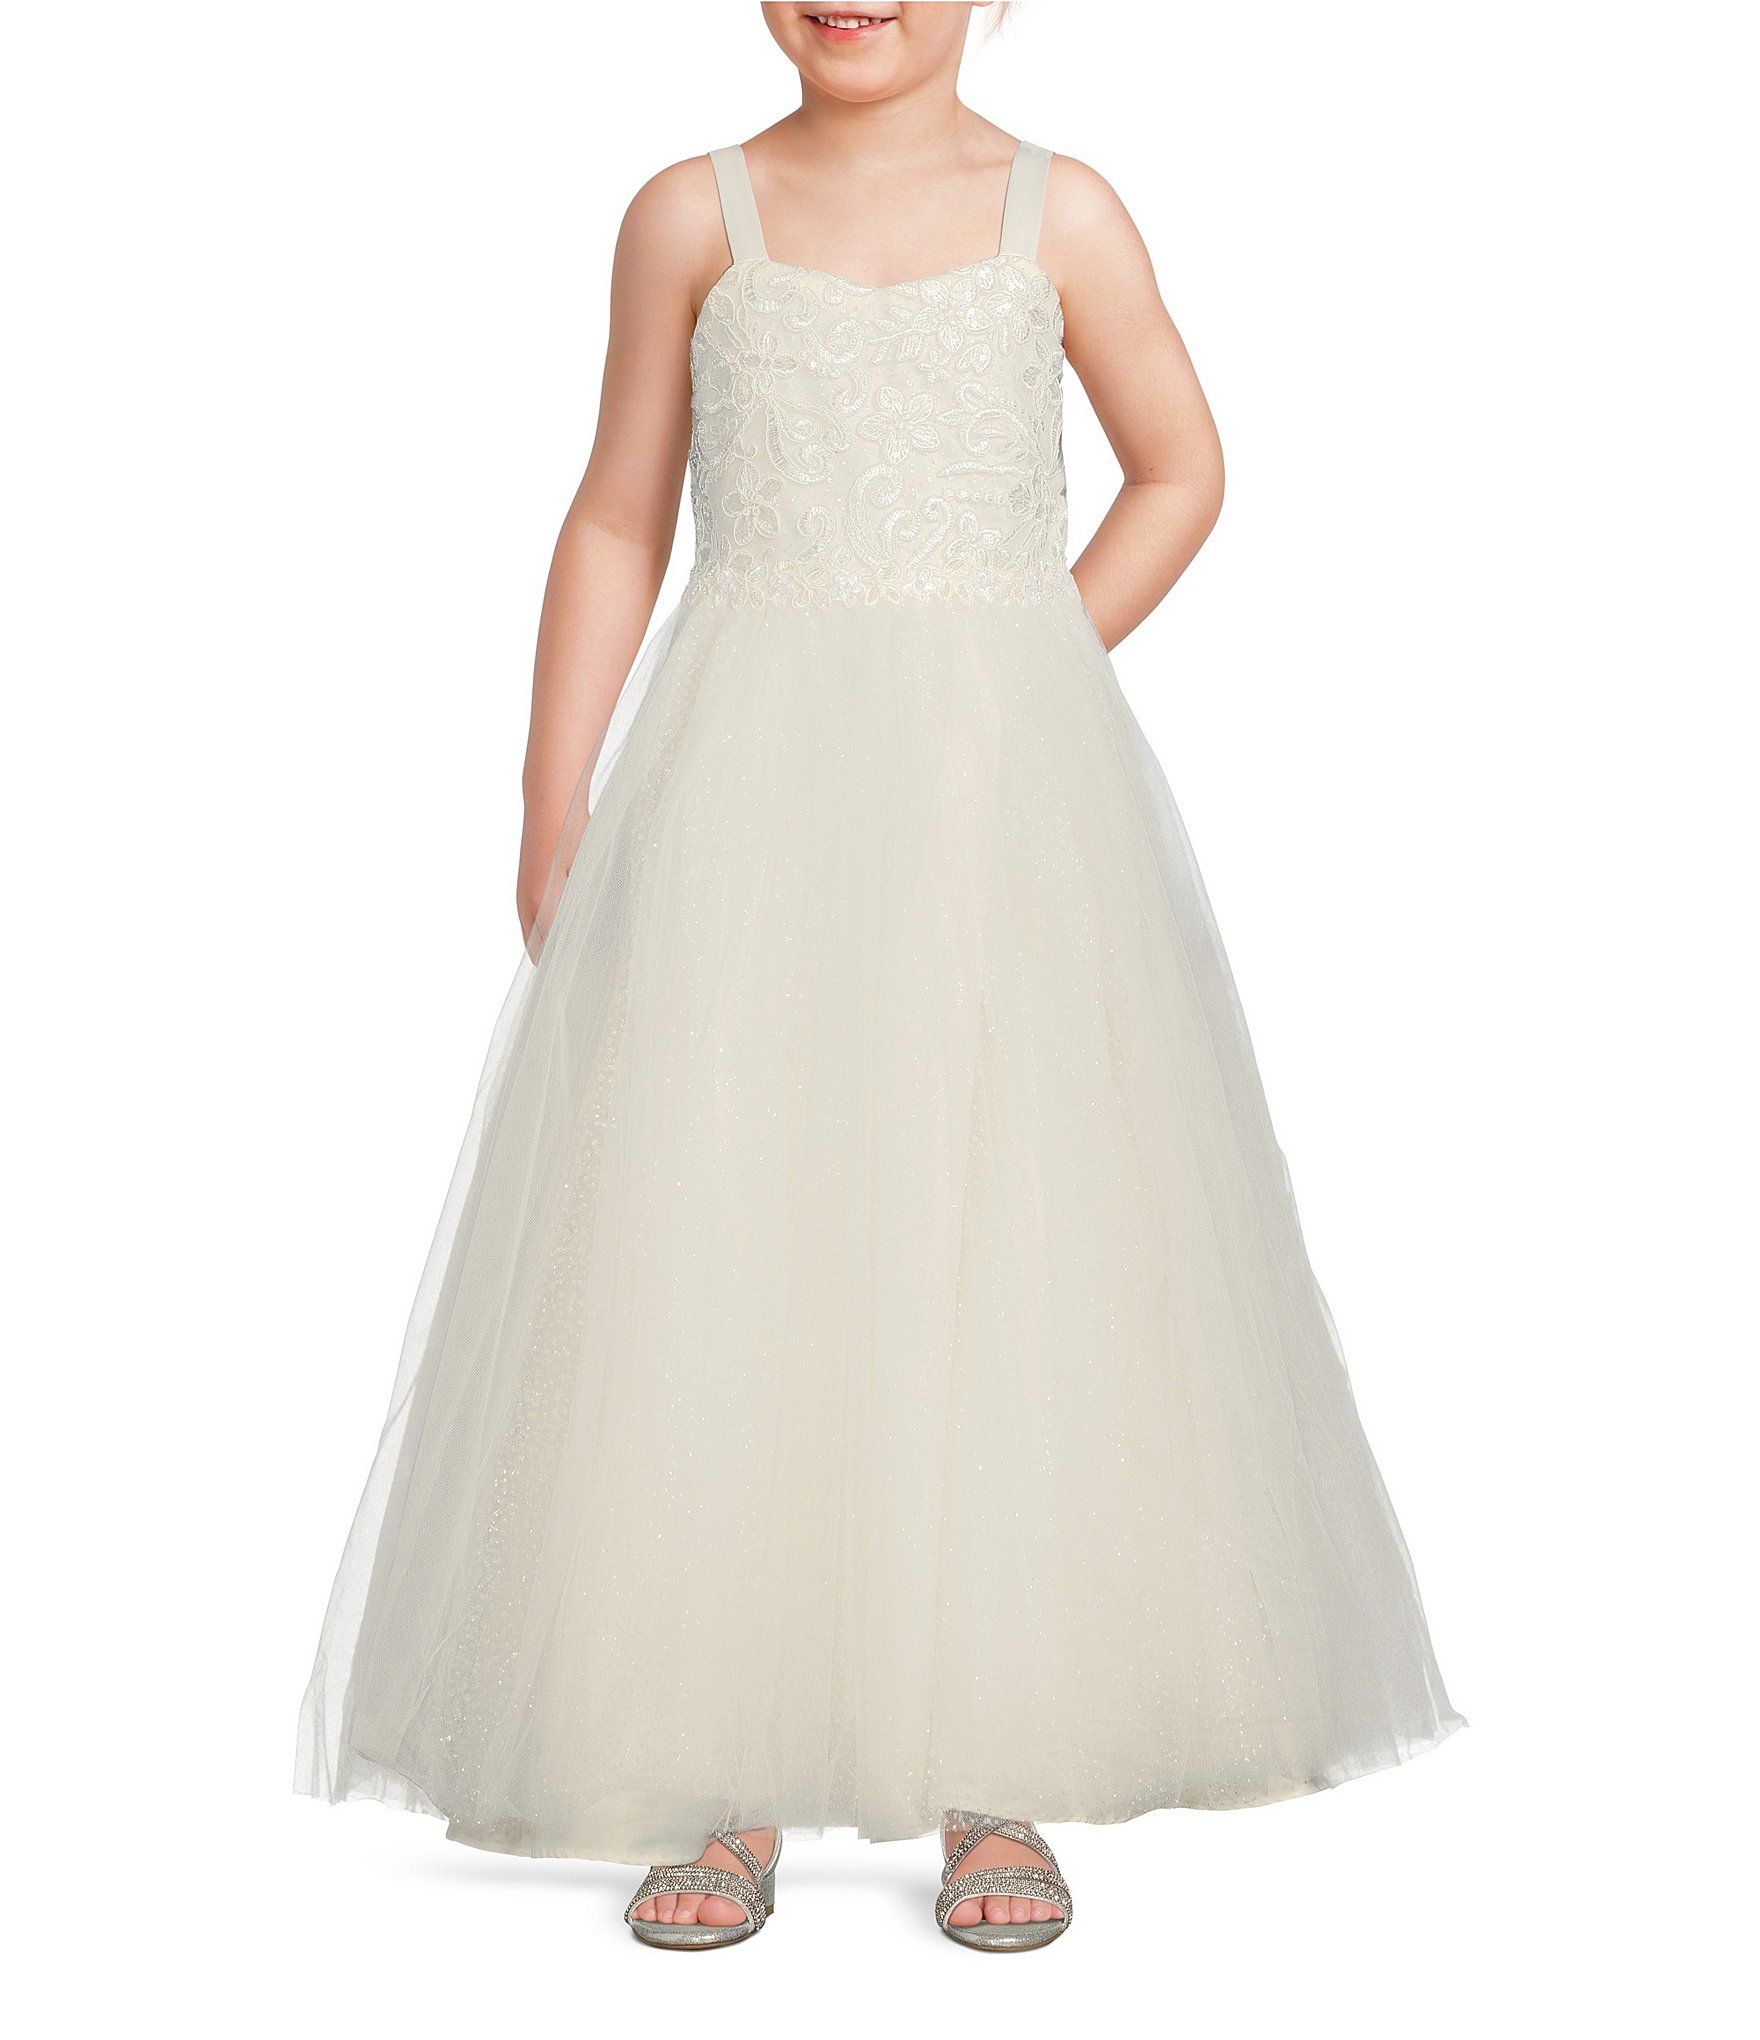 kids party dresses  Big girl  Galle Bridal Costume Shop  Facebook